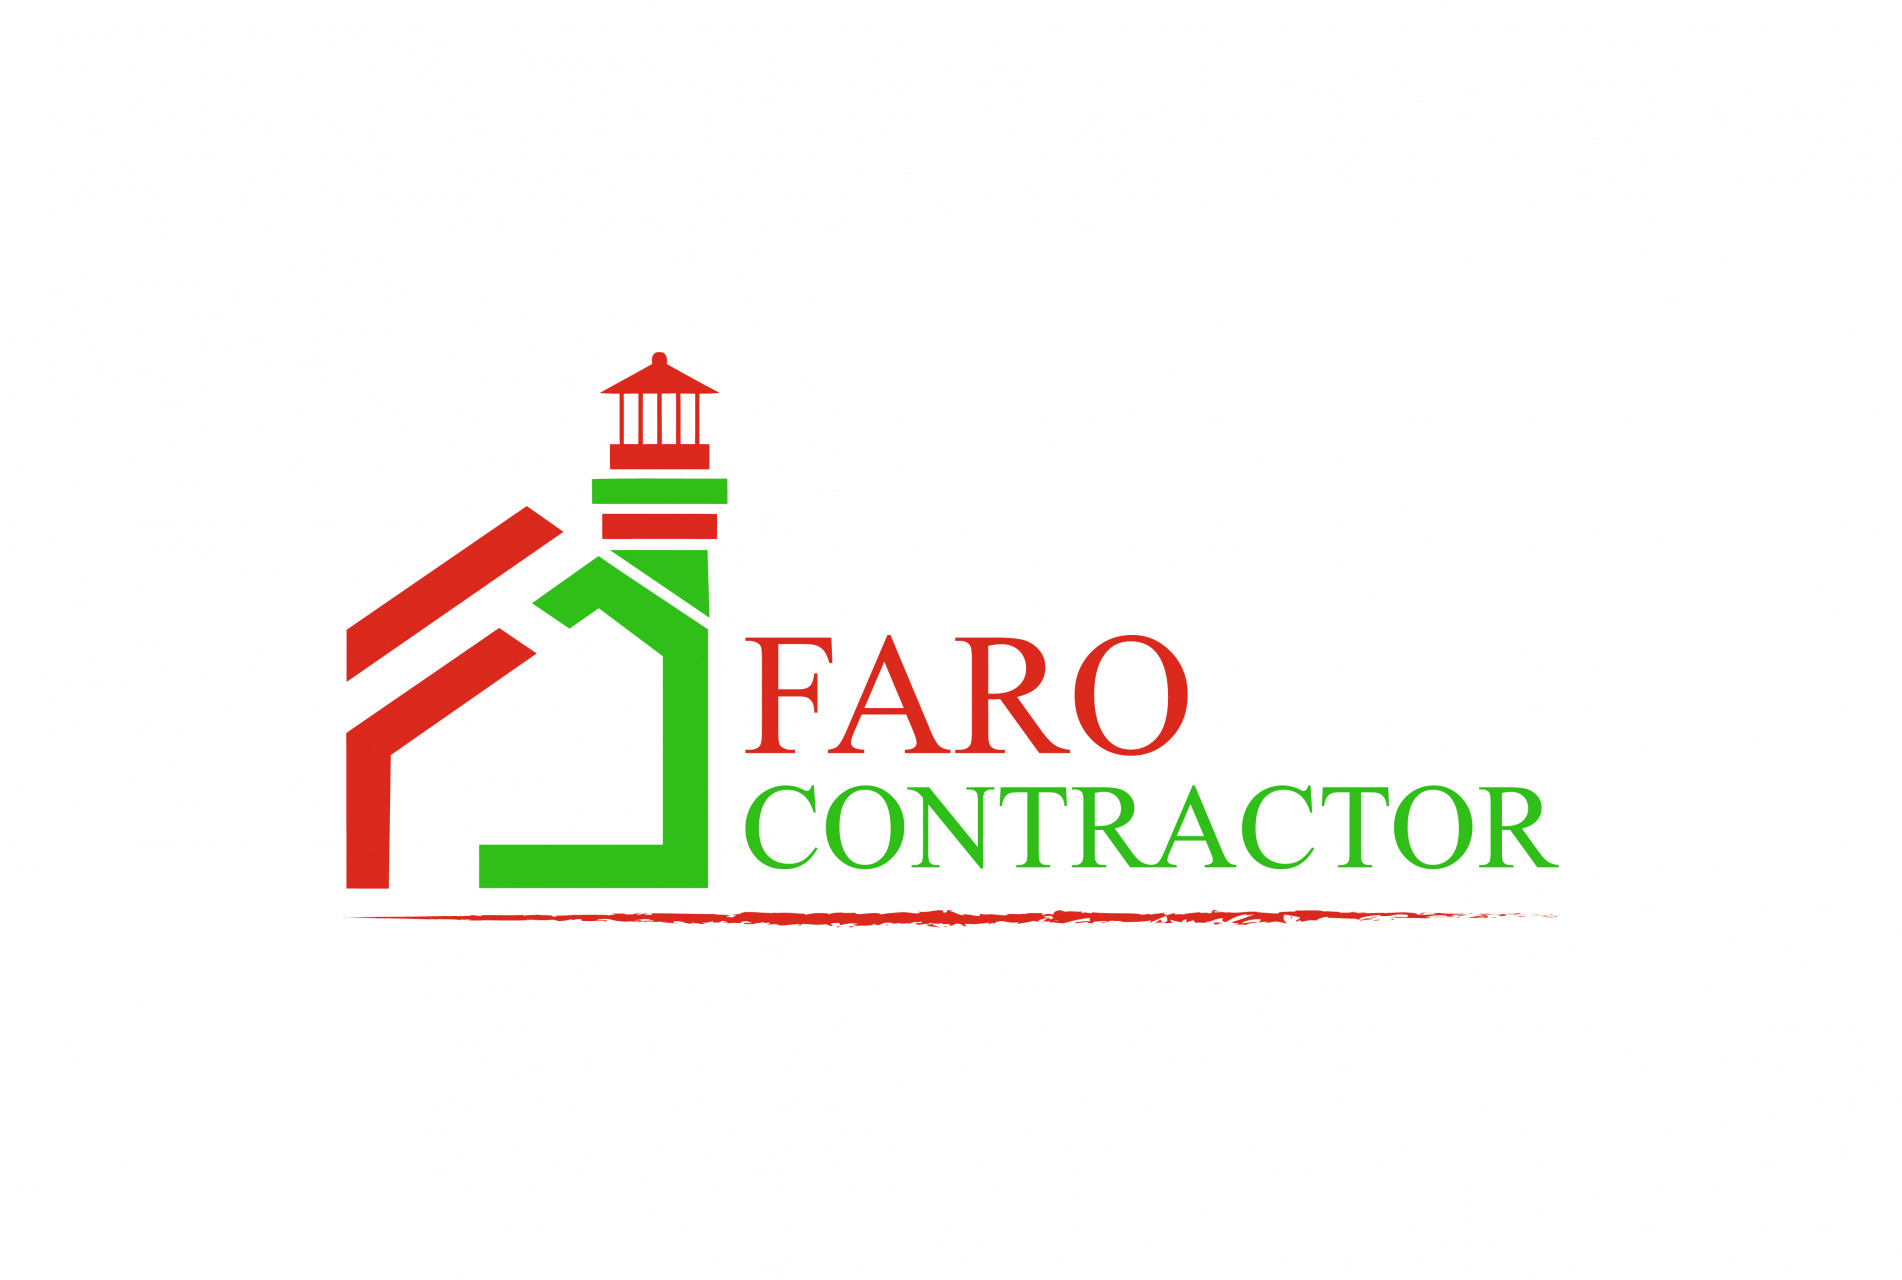 Faro contractor